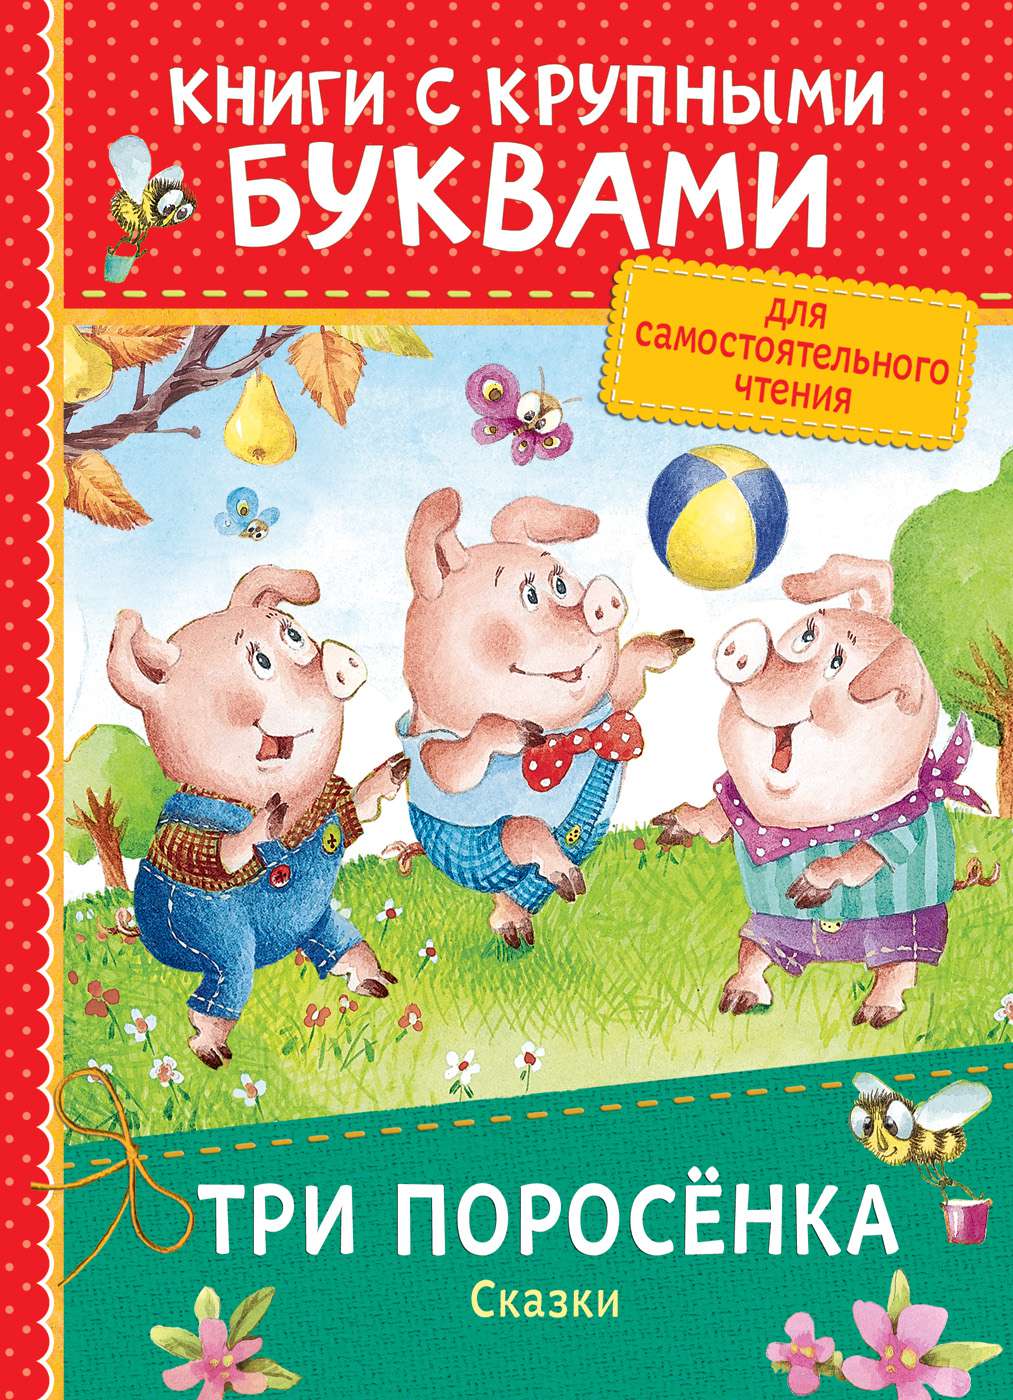 Книга 34262 Три поросенка.Сказки (Книги с крупными буквами) Росмэн - Омск 